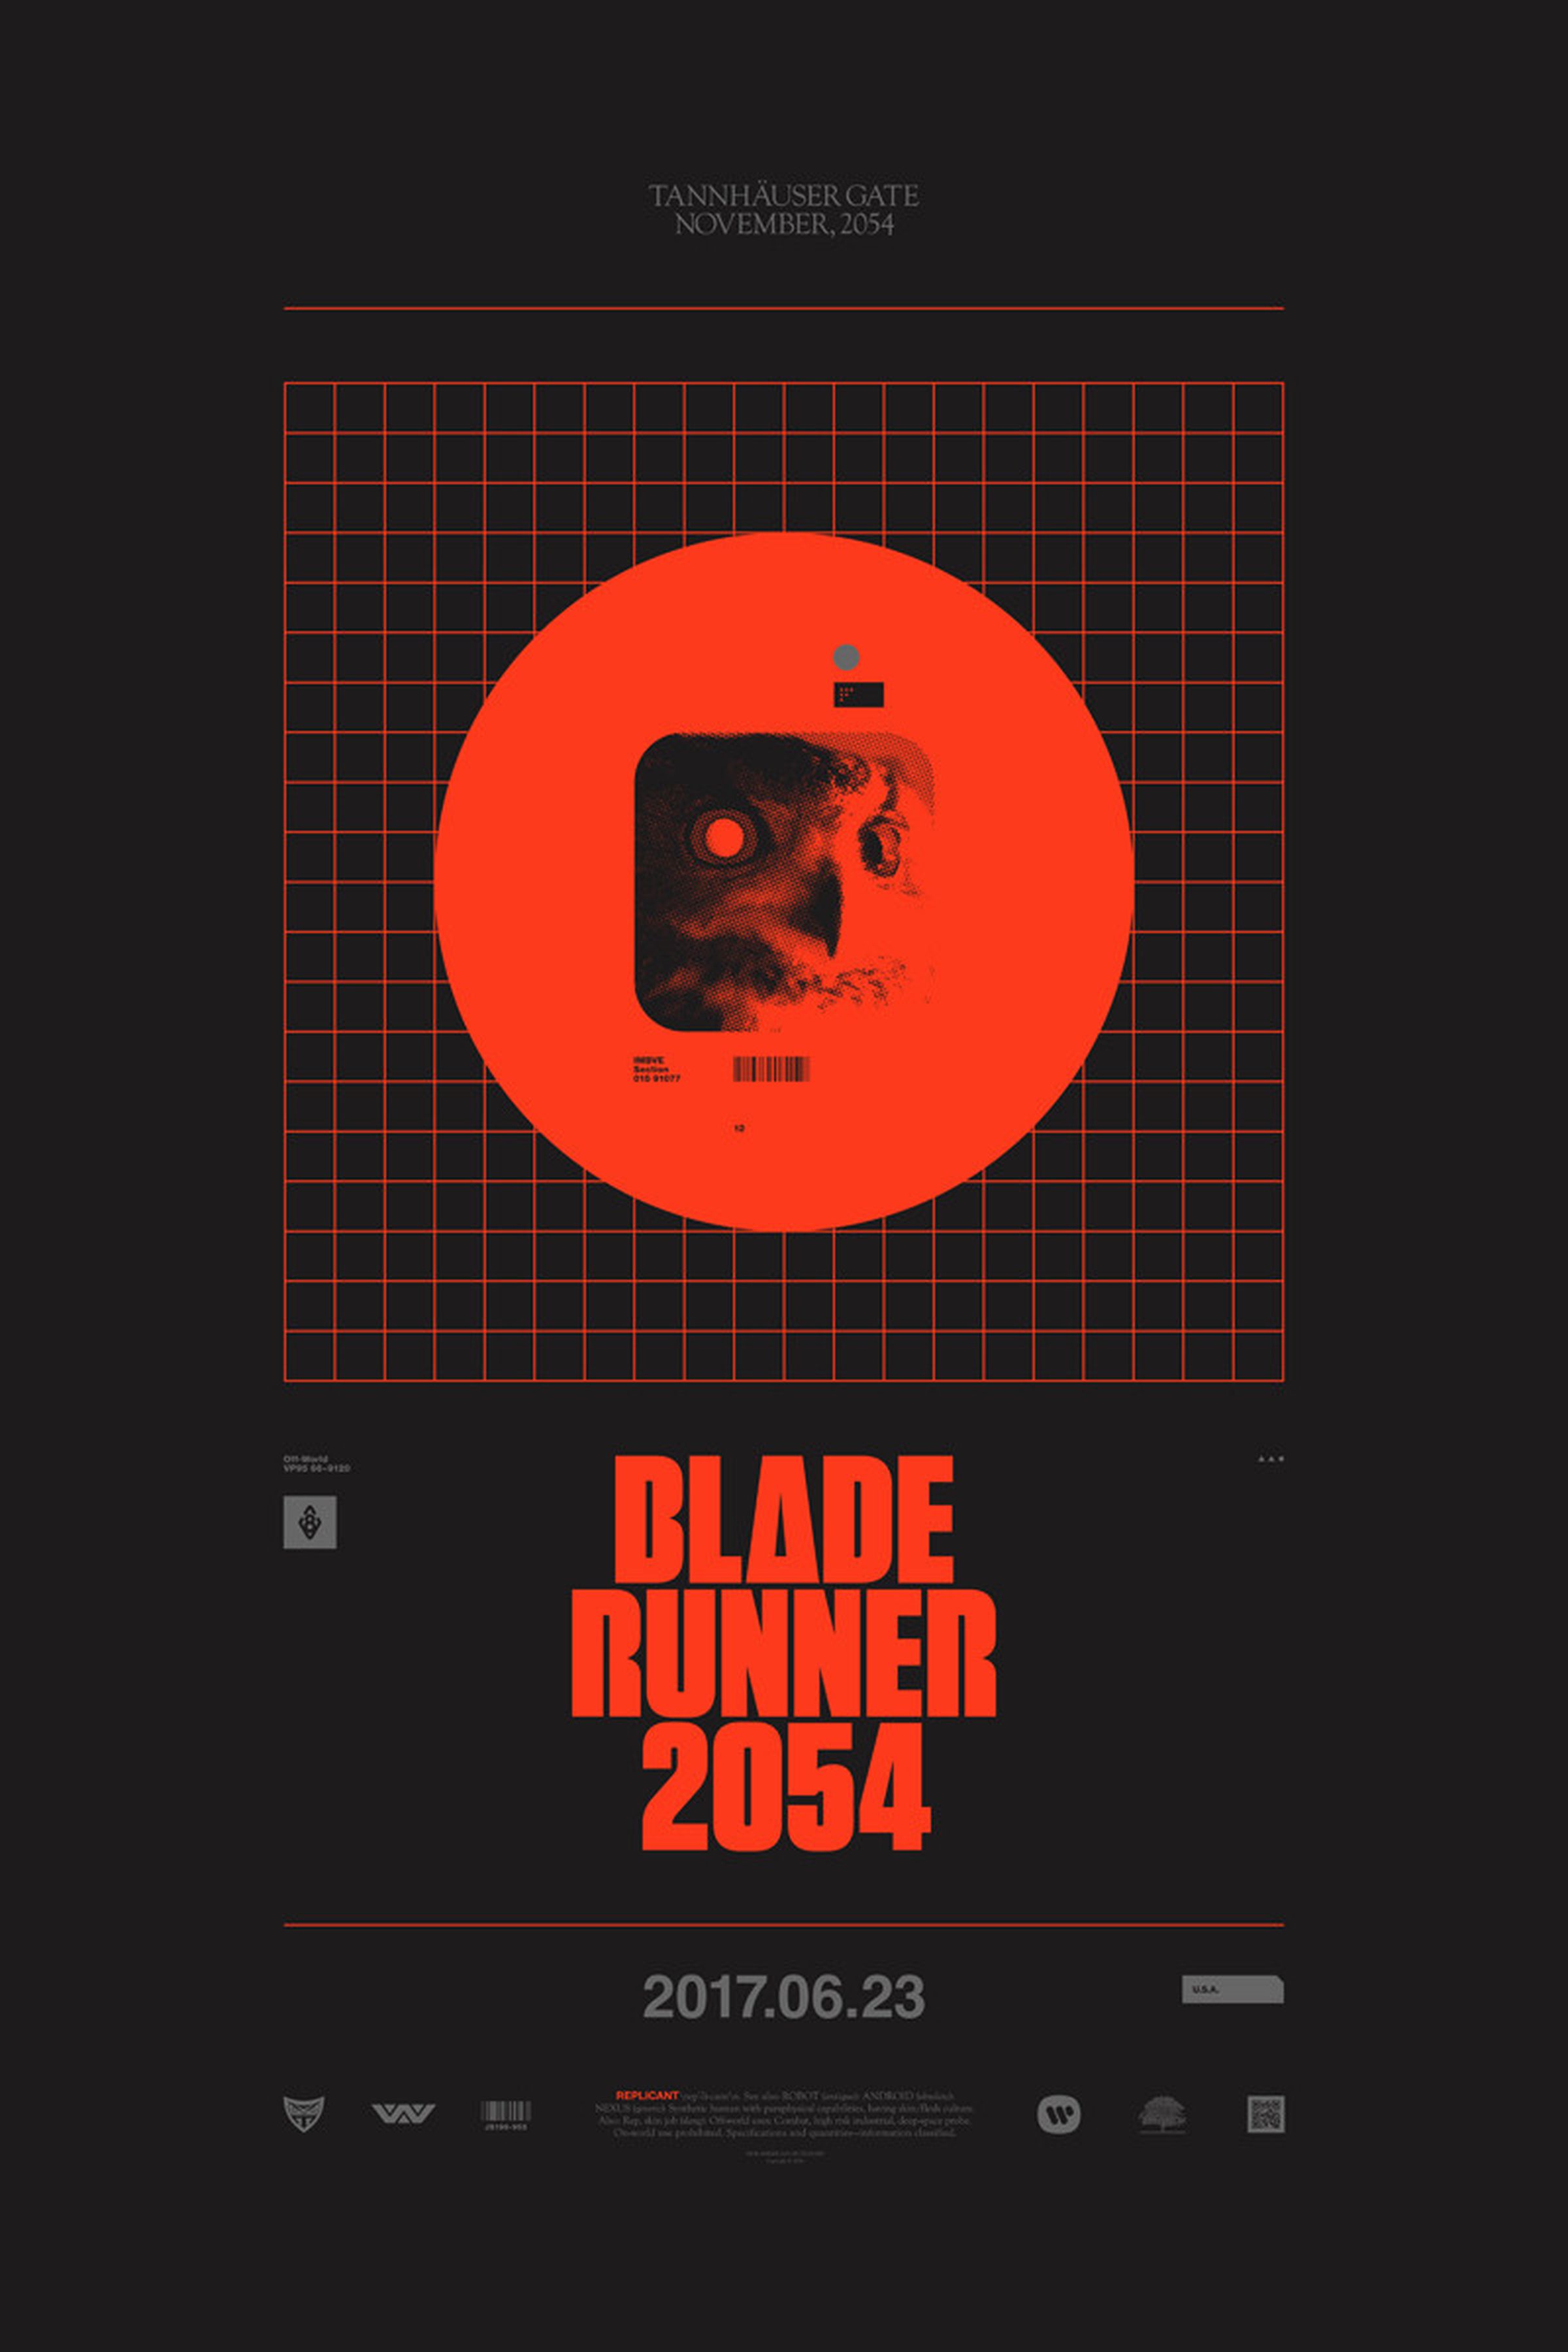 Blade Runner 2054 by Cory Schmitz